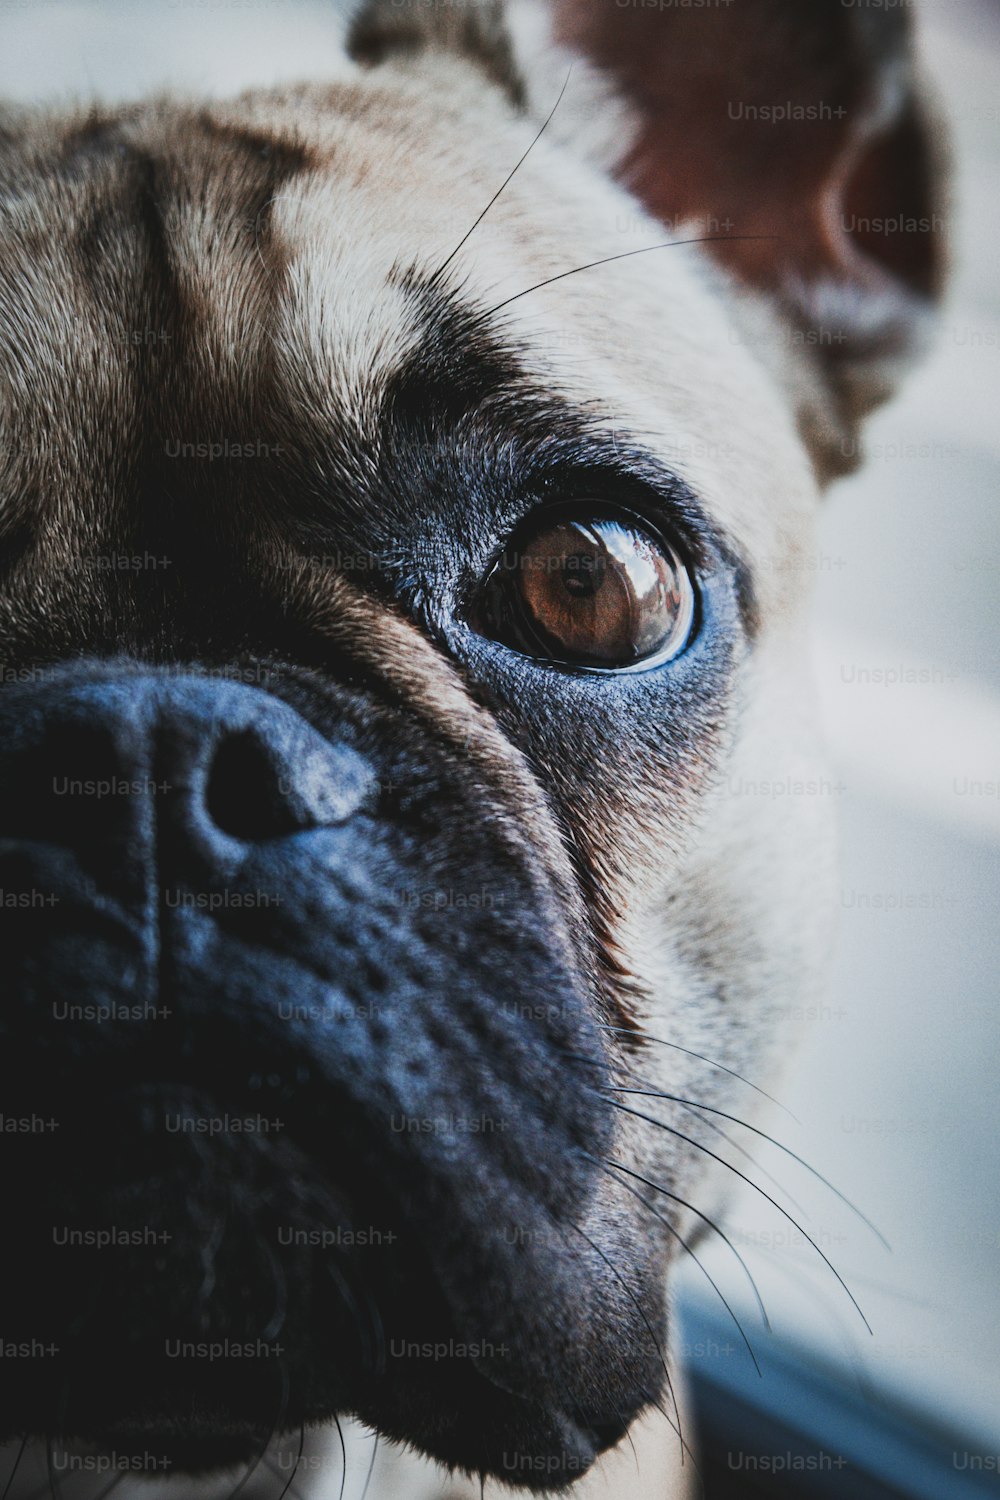 750+ Pug Dog Pictures | Download Free Images on Unsplash